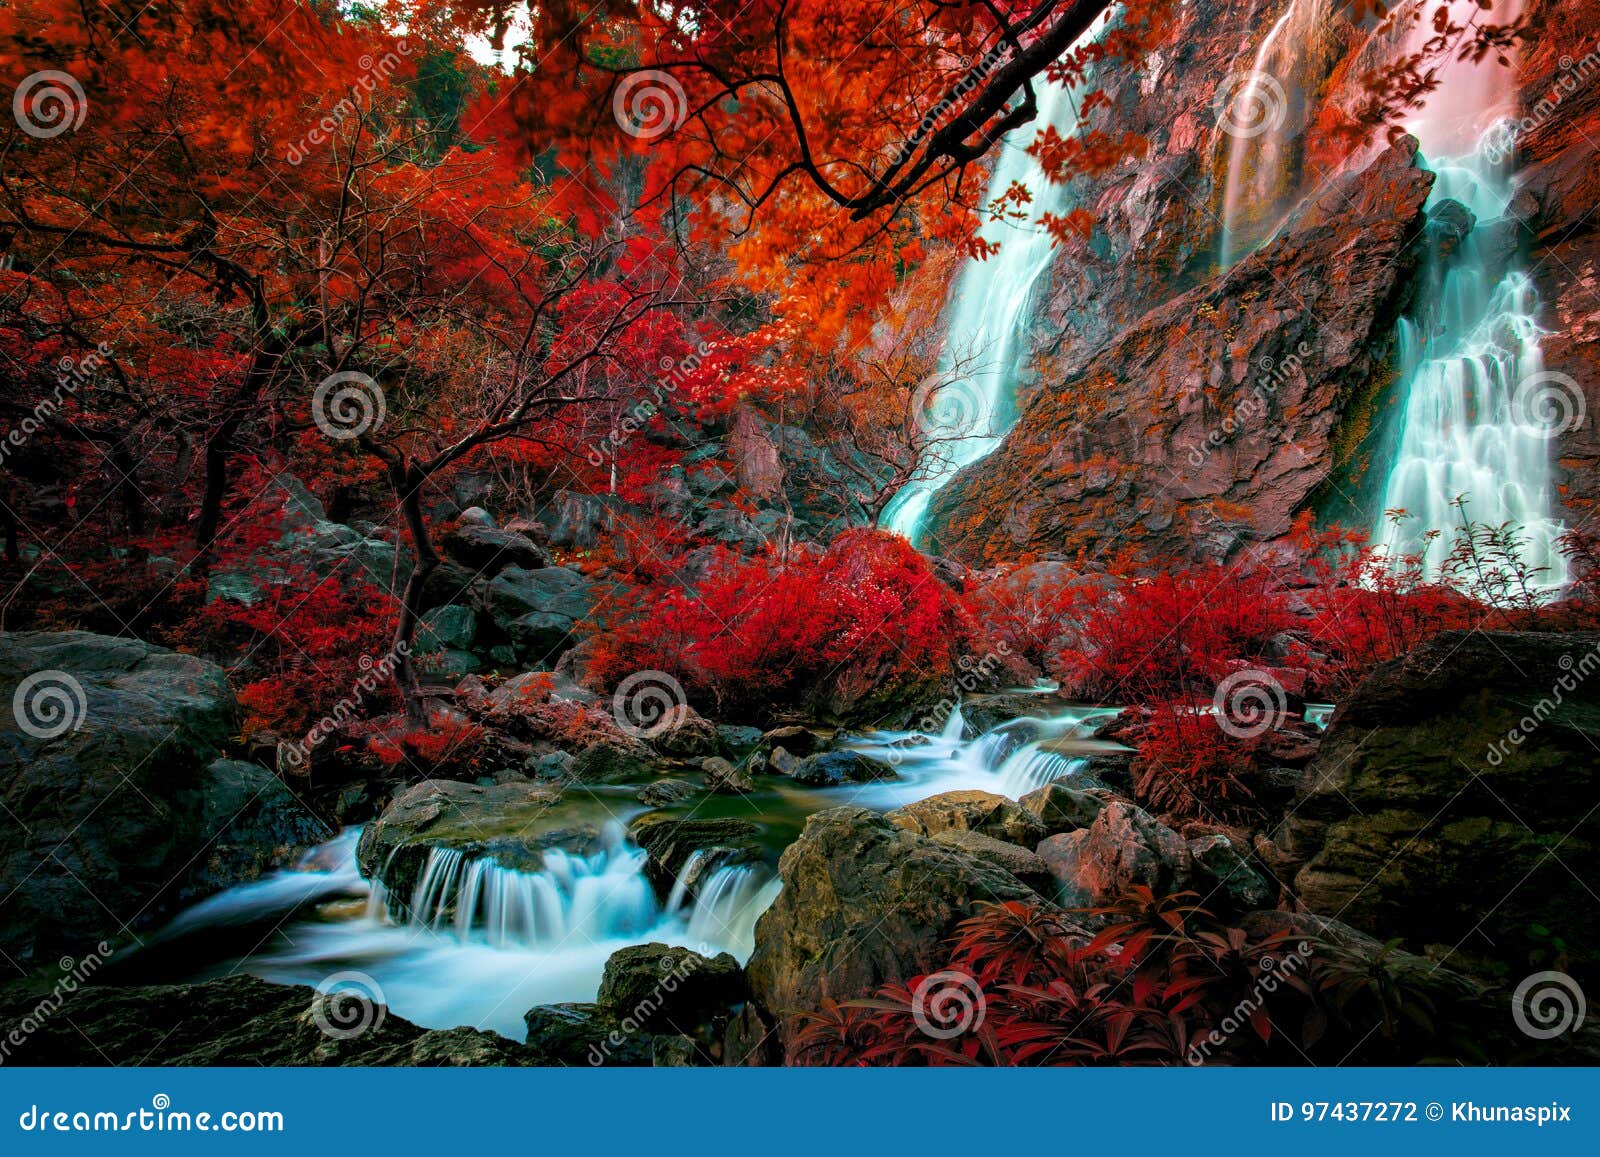 imagine colorful of klinimagine colorful of klong lan water fall